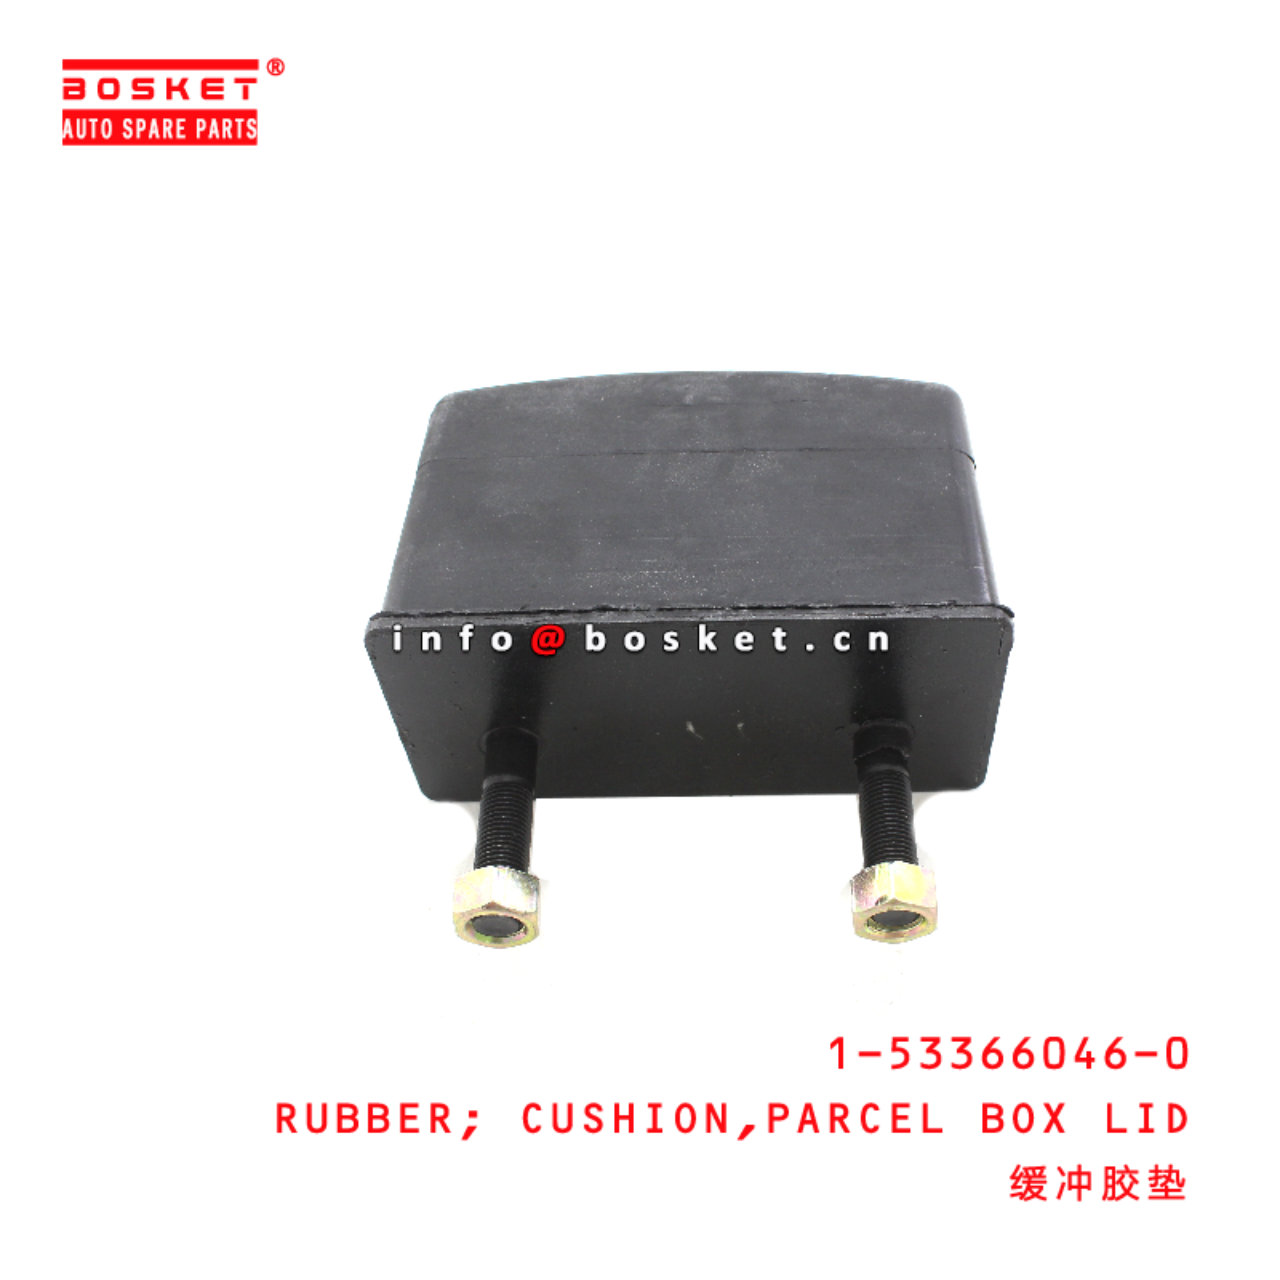 1-53366046-0 Parcel Box Lid Cushion Rubber suitable for ISUZU FVR34 6HK1 1533660460